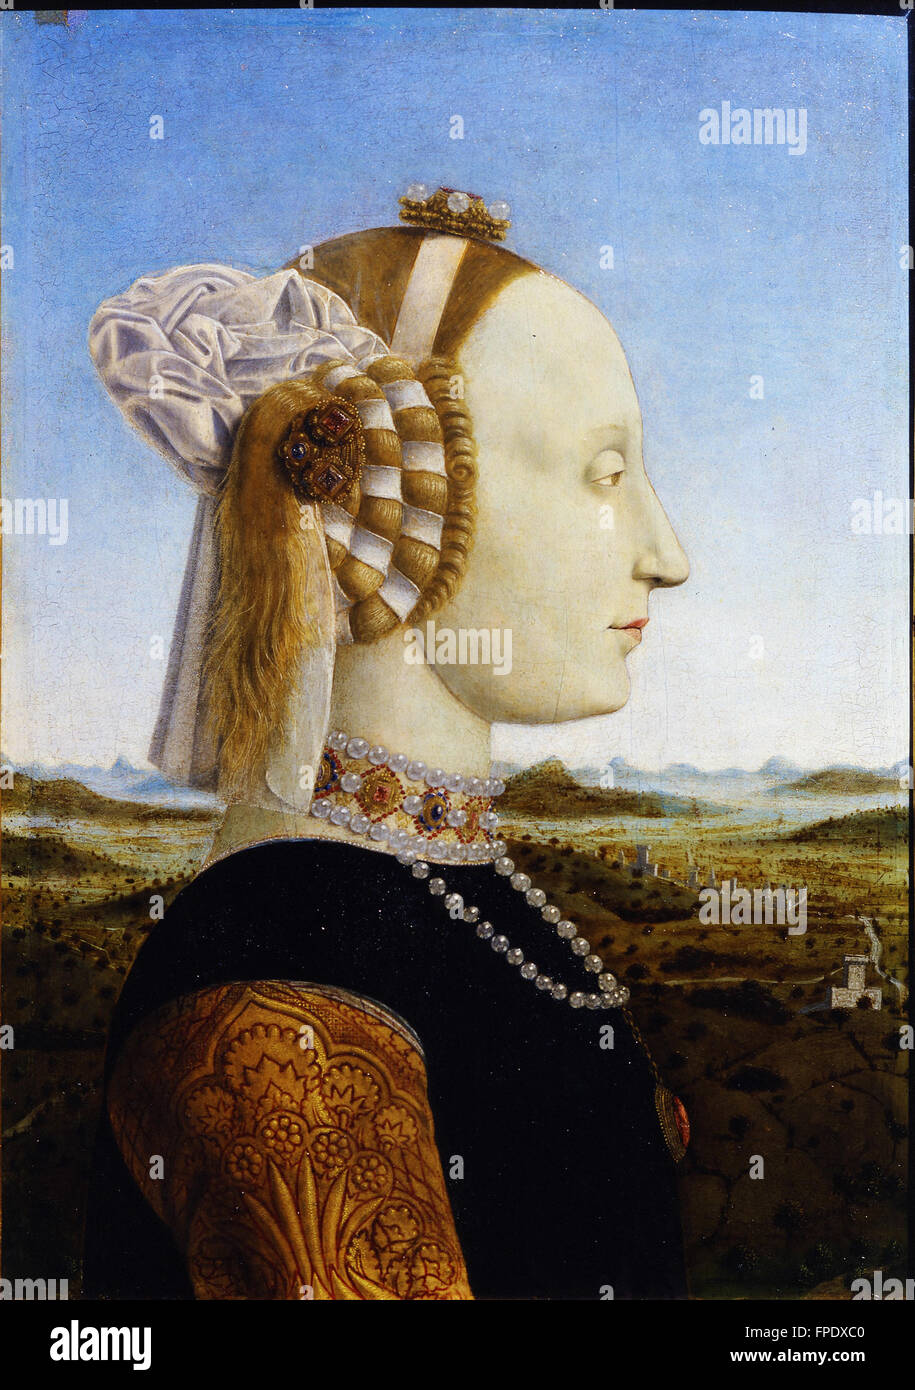 Piero della Francesca retratos de los Duques de Urbino, Federico da Montefeltro y Battista Foto de stock